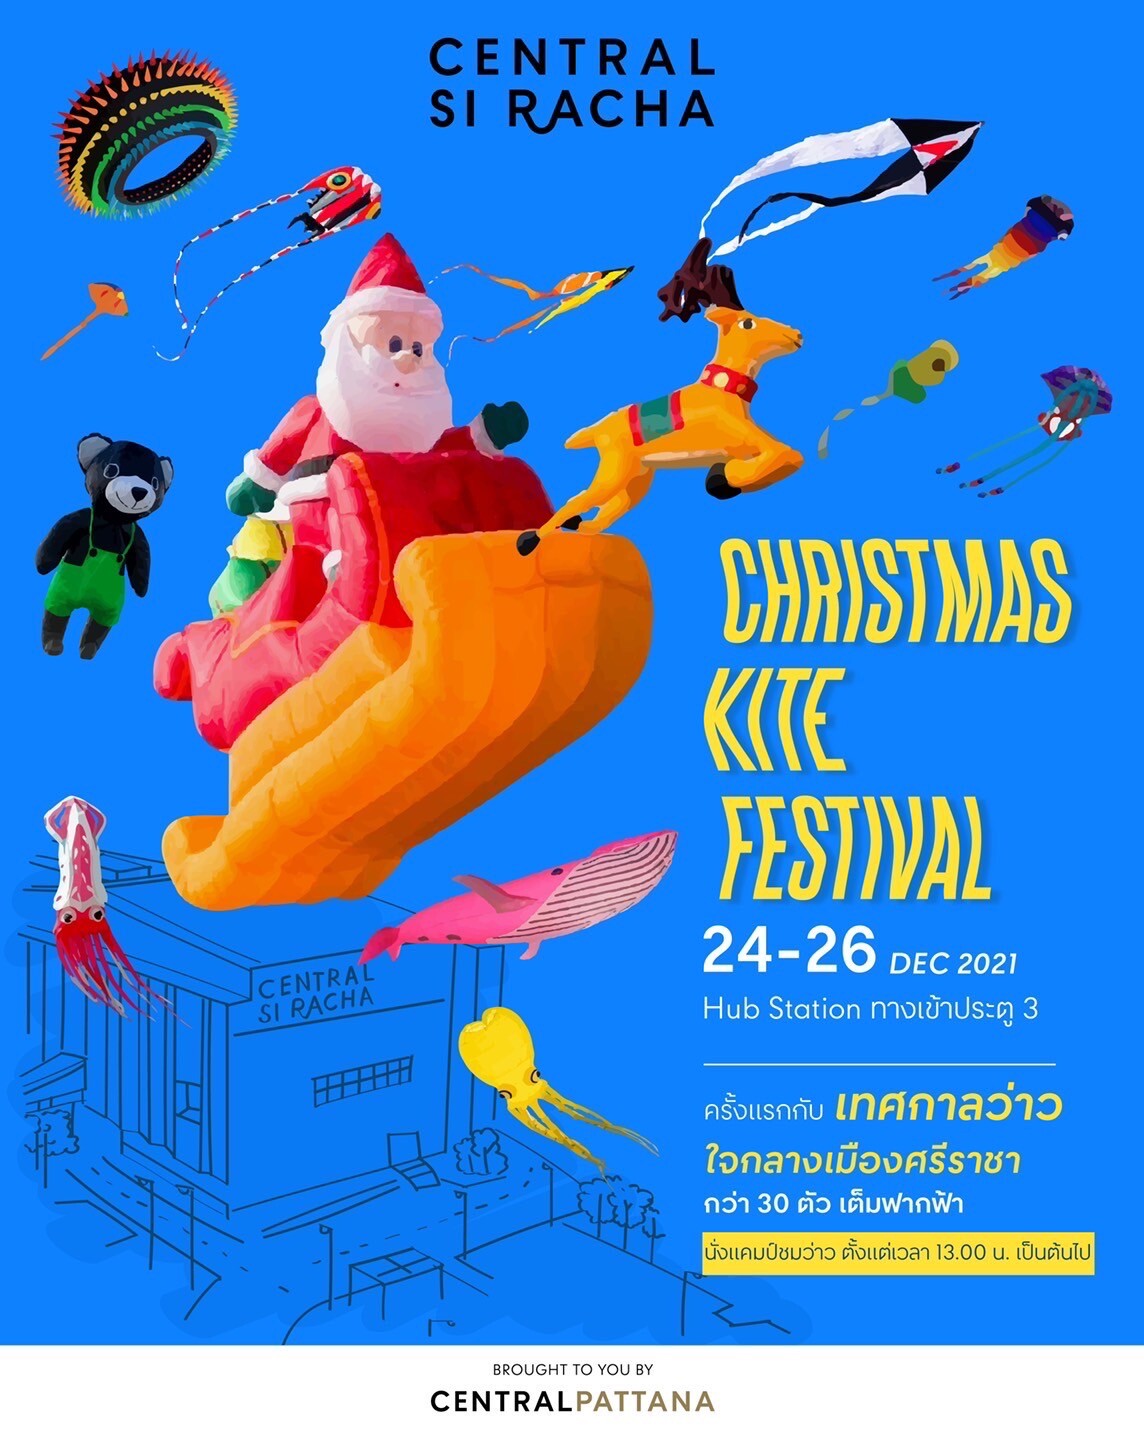 Christmas Kite Festival 2021 เทศกาลว่าวครั้งใหญ่ 24-26 ธ.ค.64 ที่ เซ็นทรัล ศรีราชา